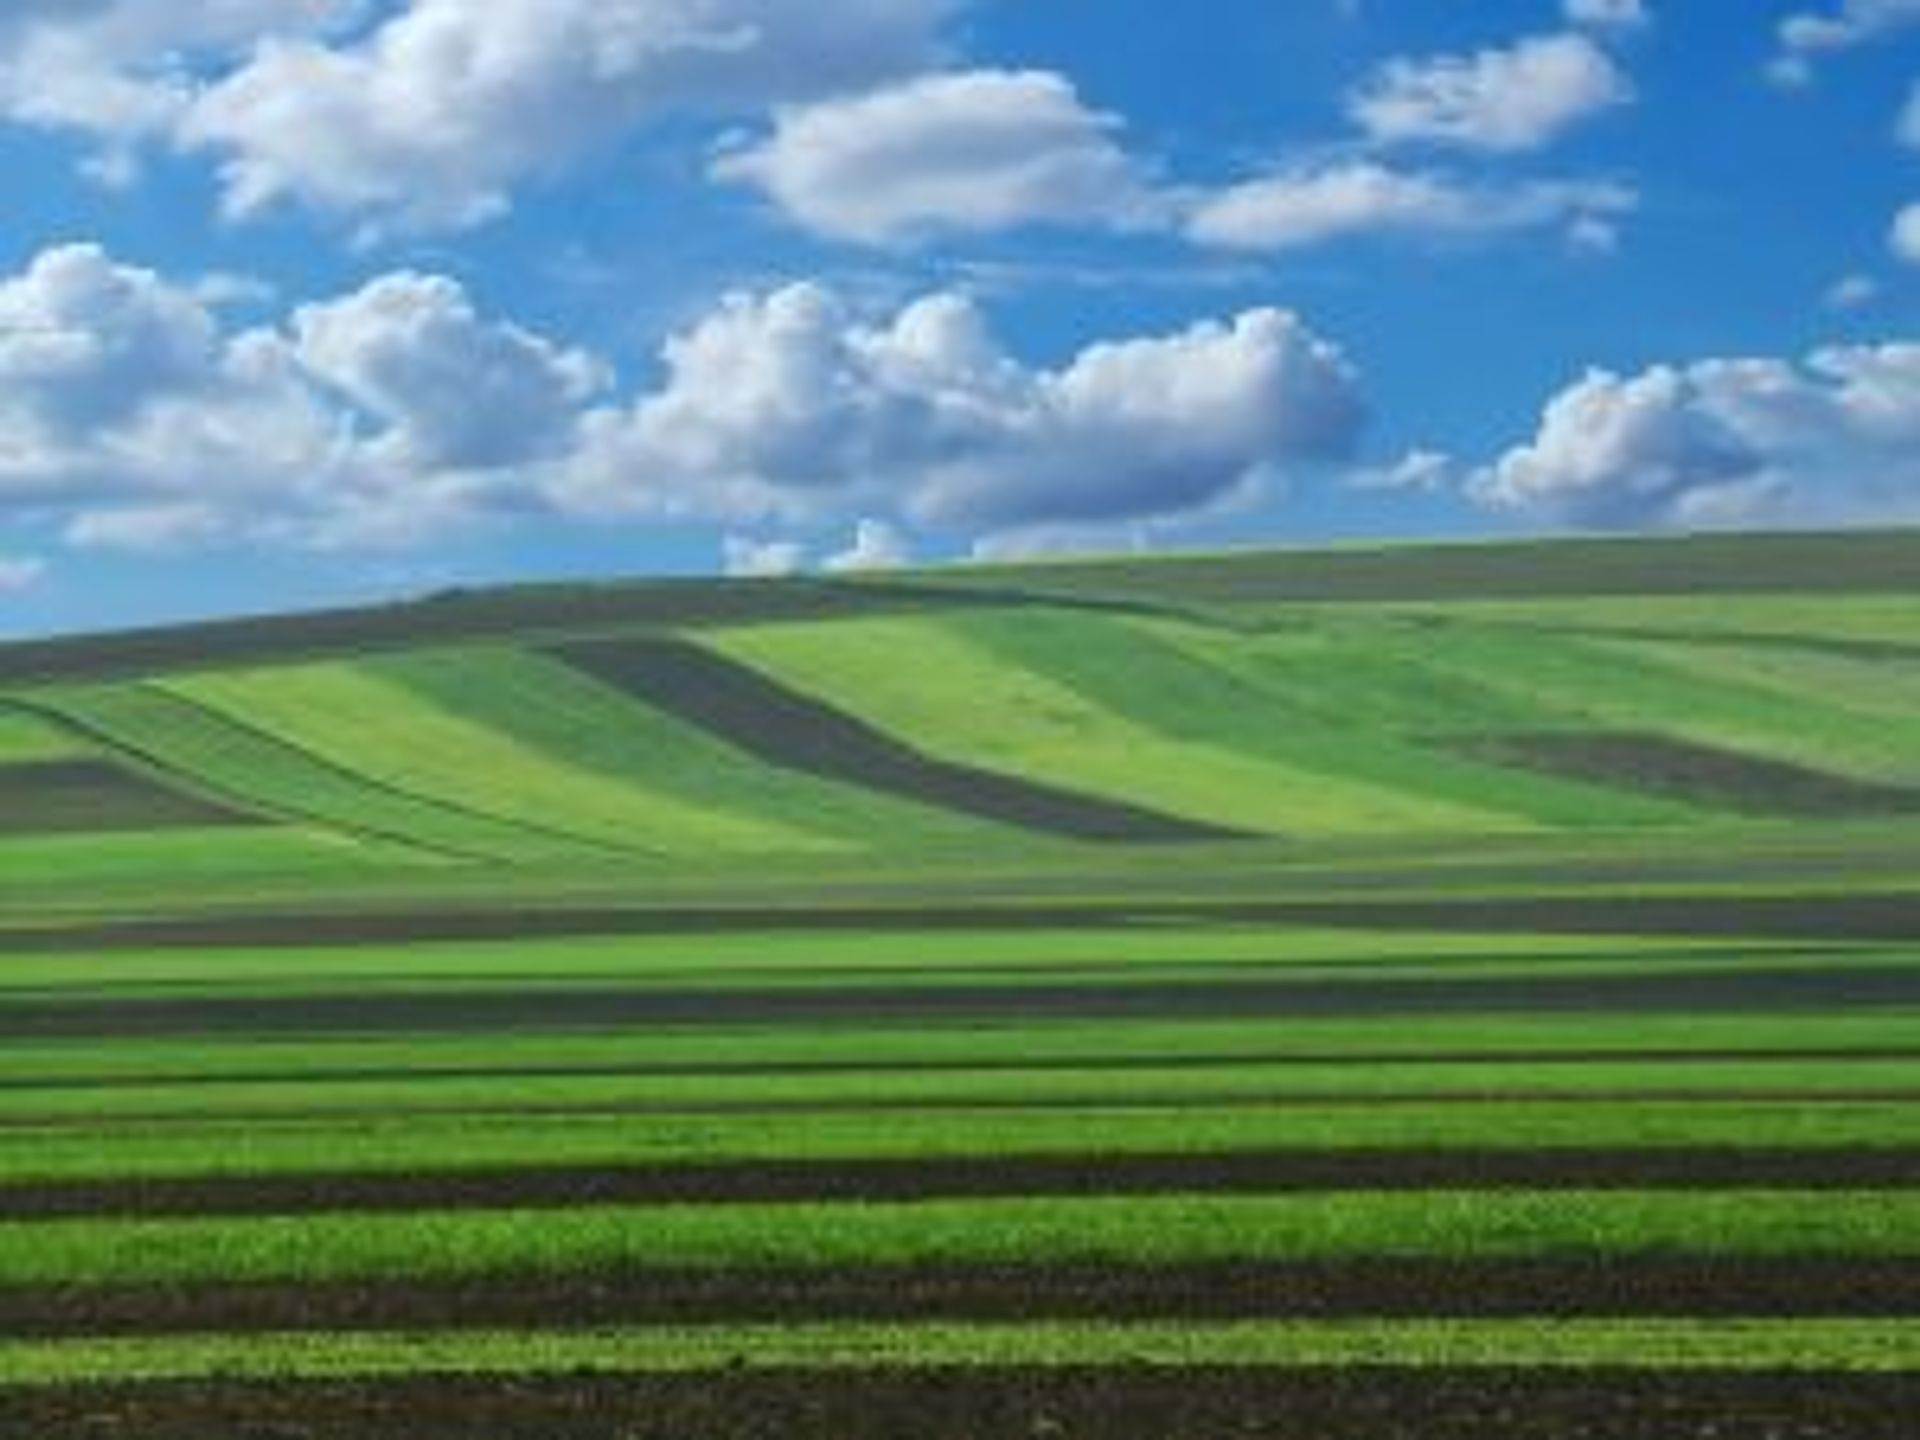  Zmiany w obrocie ziemią rolną podwyższą ceny gruntów pod inwestycje – sprzedaż ziemi rolnej deweloperowi możliwa po wcześniejszym „odrolnieniu”